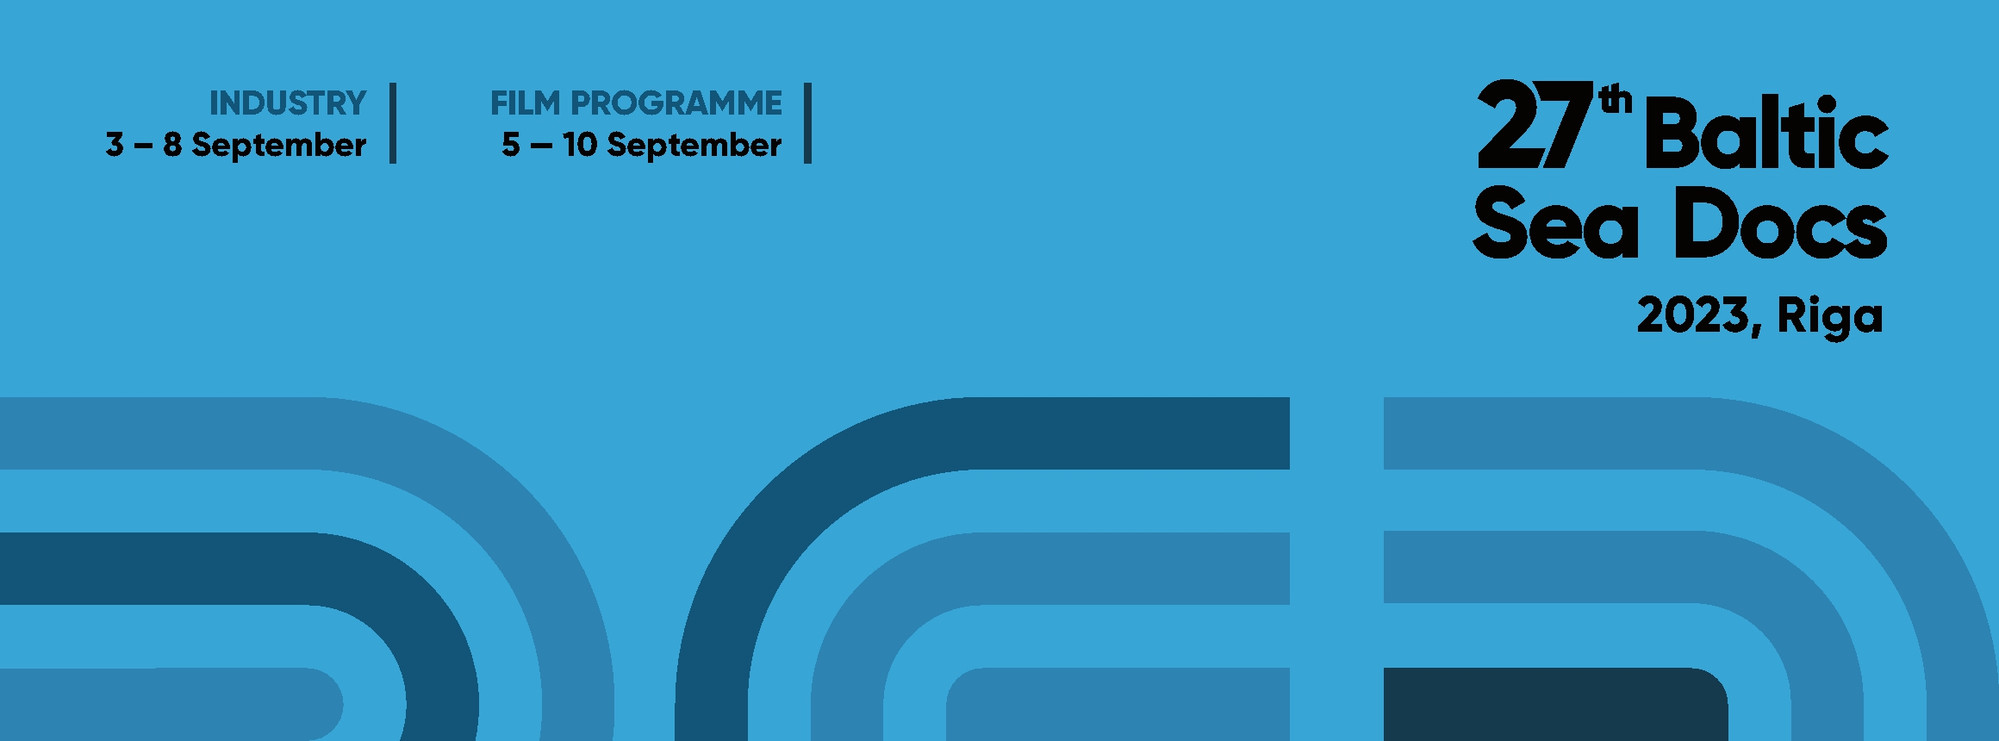 Inustry 3-8 September. Film programme 5-10 September. 27th Baltic Sea Docs 2023, Riga. Illustrasjon.